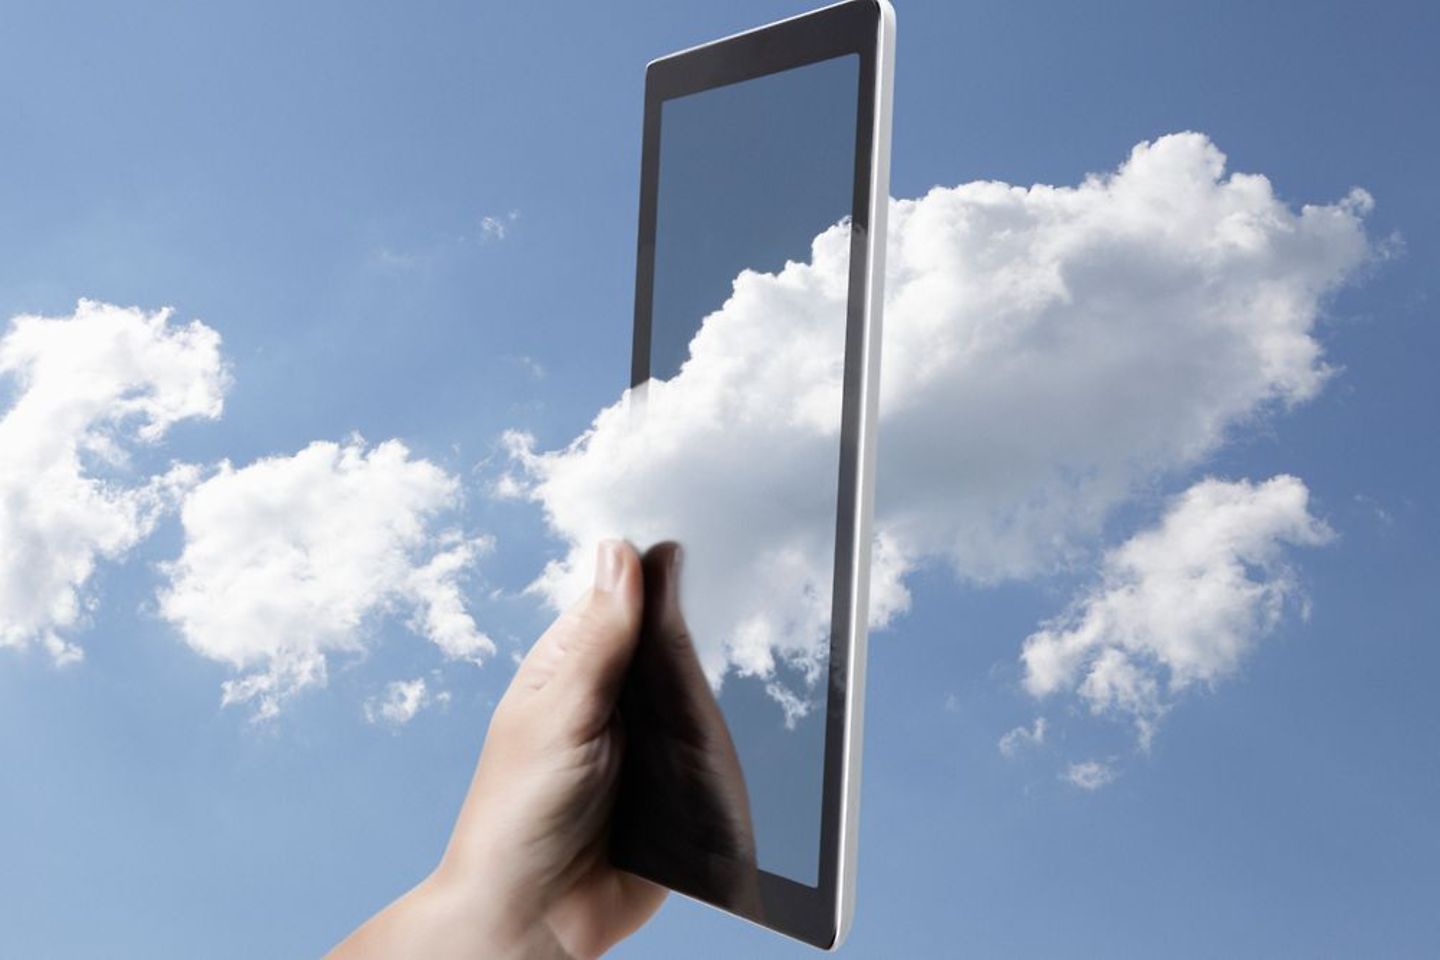 Symbolische weergave van cloud computing met een digitale tabletcomputer in de lucht omgeven door wolken